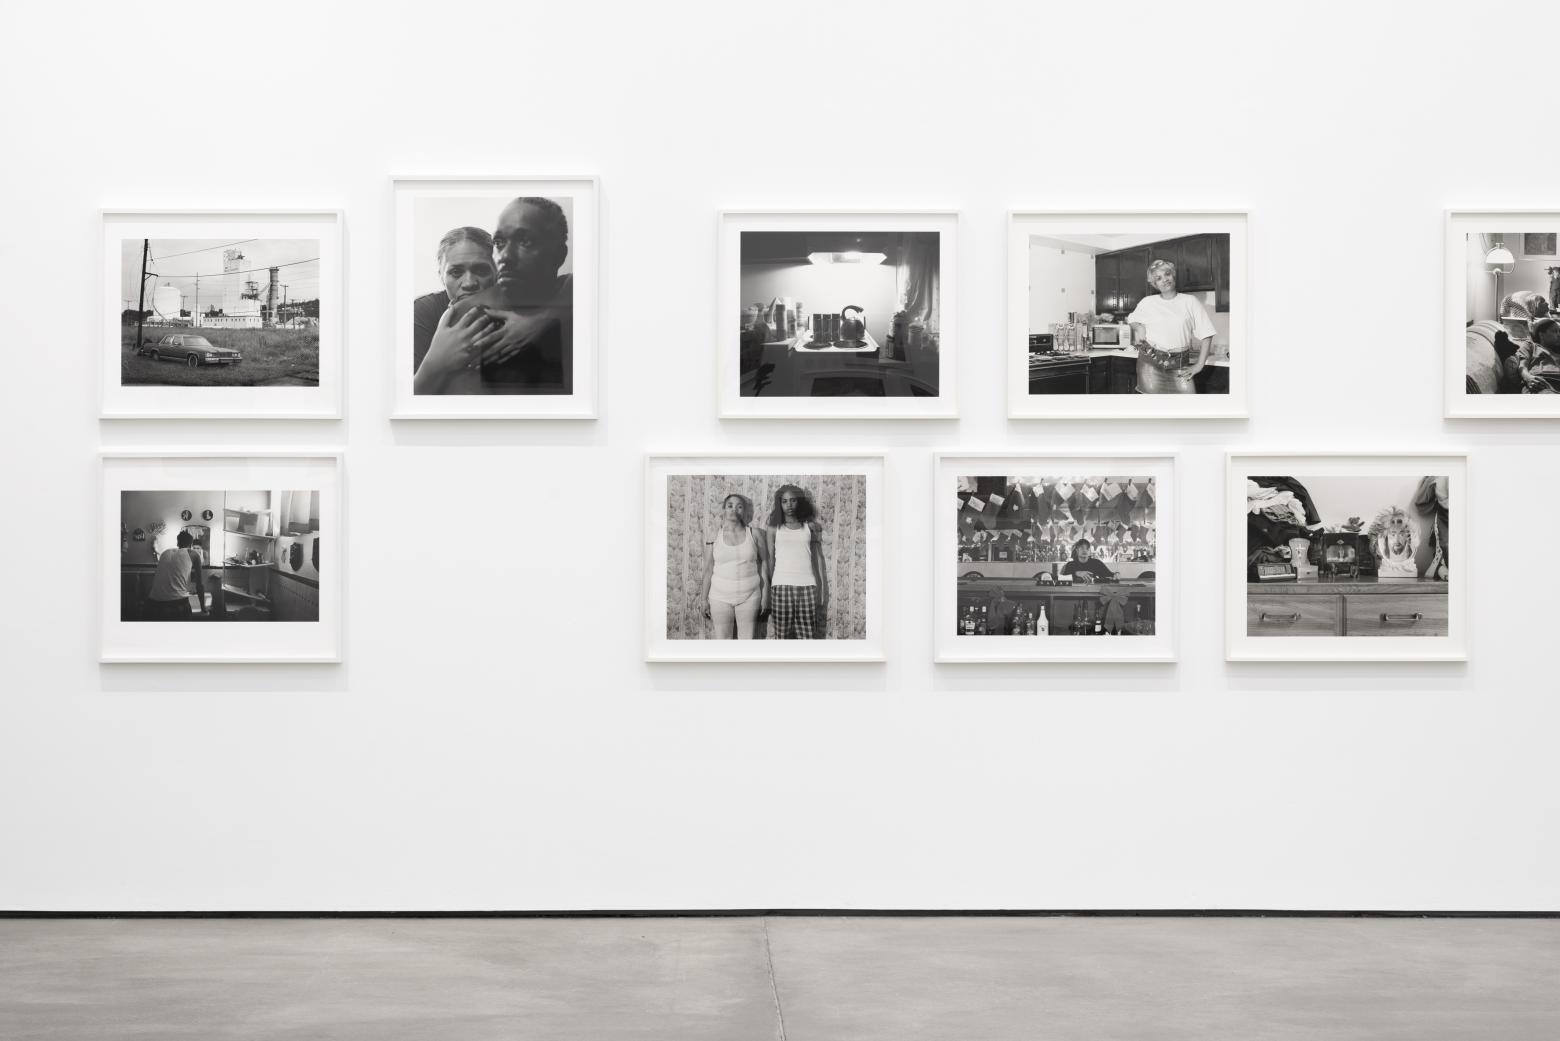 Fotografien von LaToya Ruby Frazier in der Ausstellung "Rust: Bernd & Hilla Becher, LaToya Ruby Frazier, Stephen Shore", Installationsansicht bei Sprüth Magers, 2022